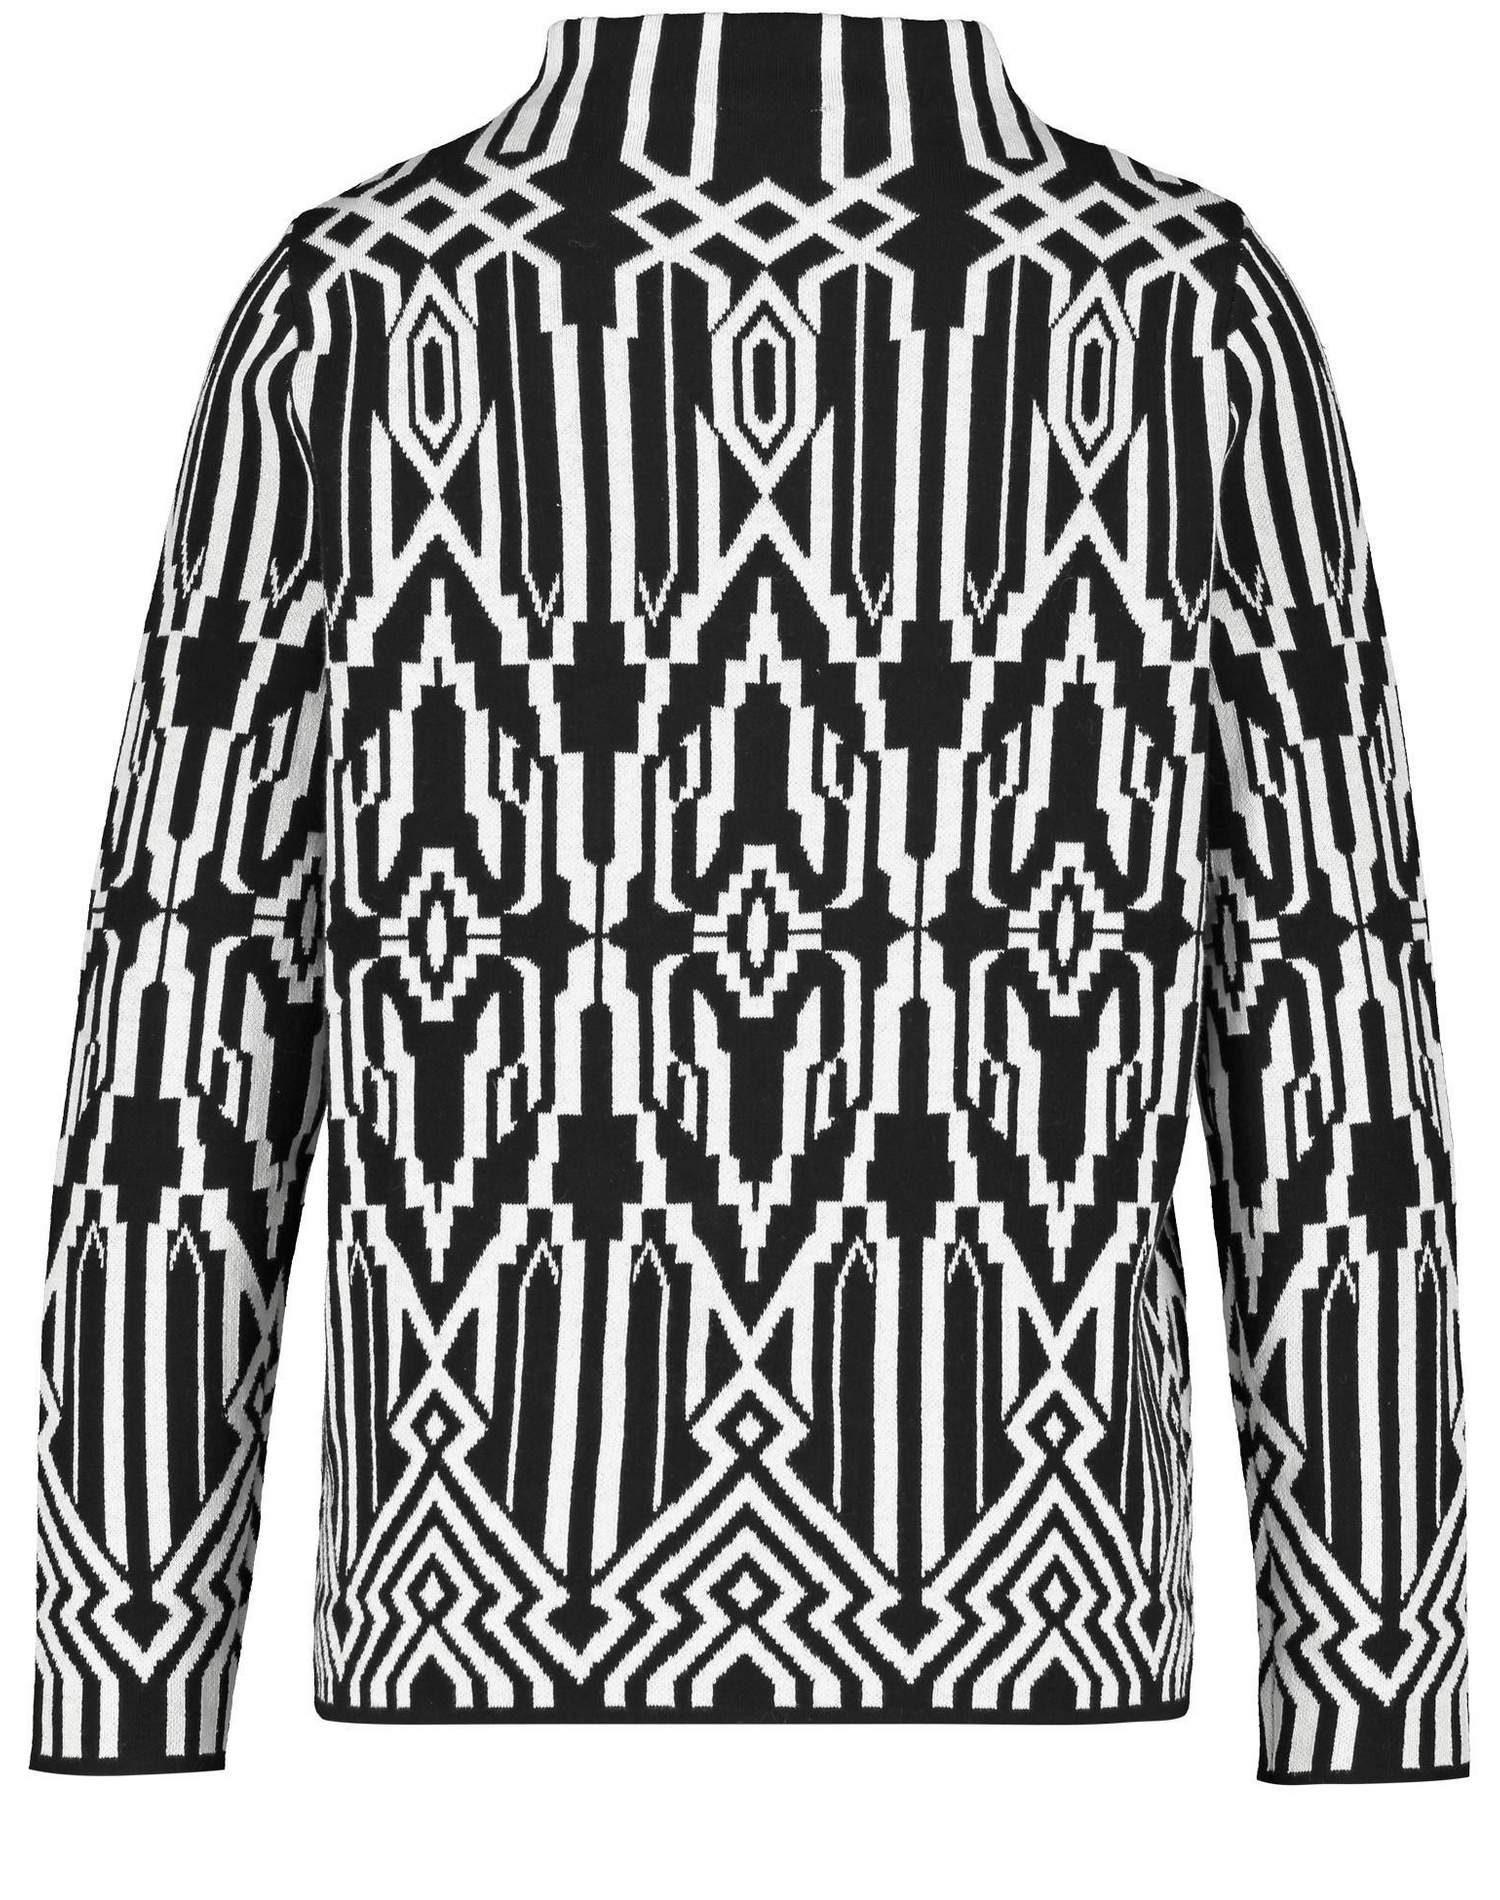 GERRY WEBER Pullover in Schwarz, Weiß 